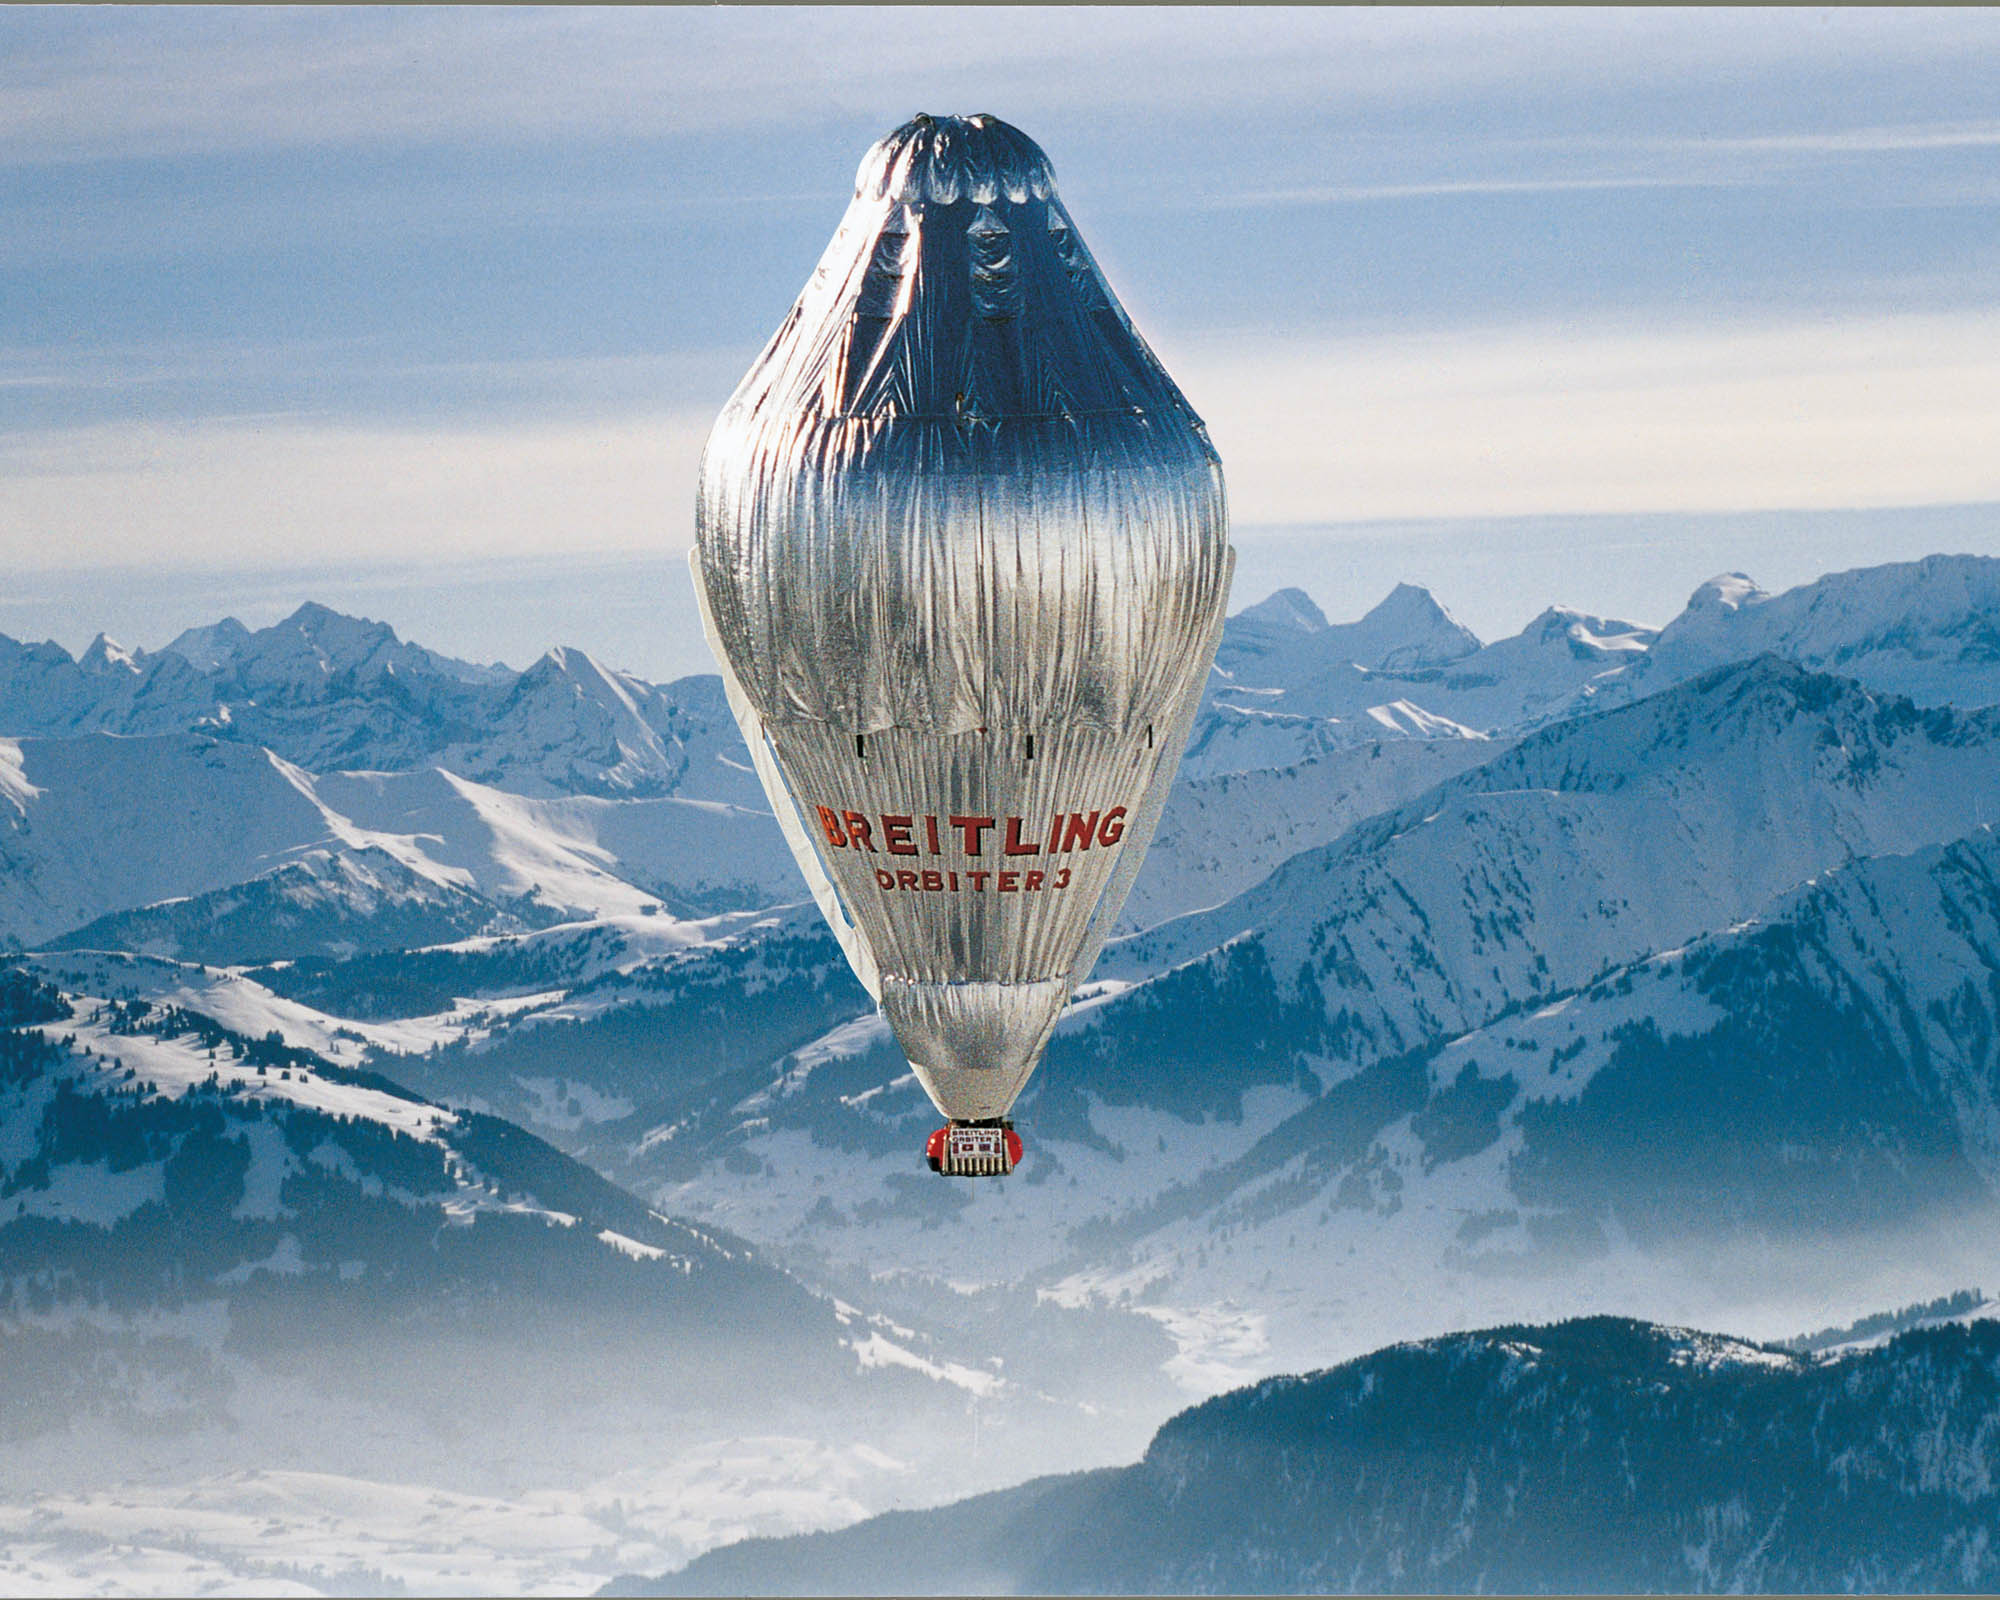 Breitling balloon over mountains